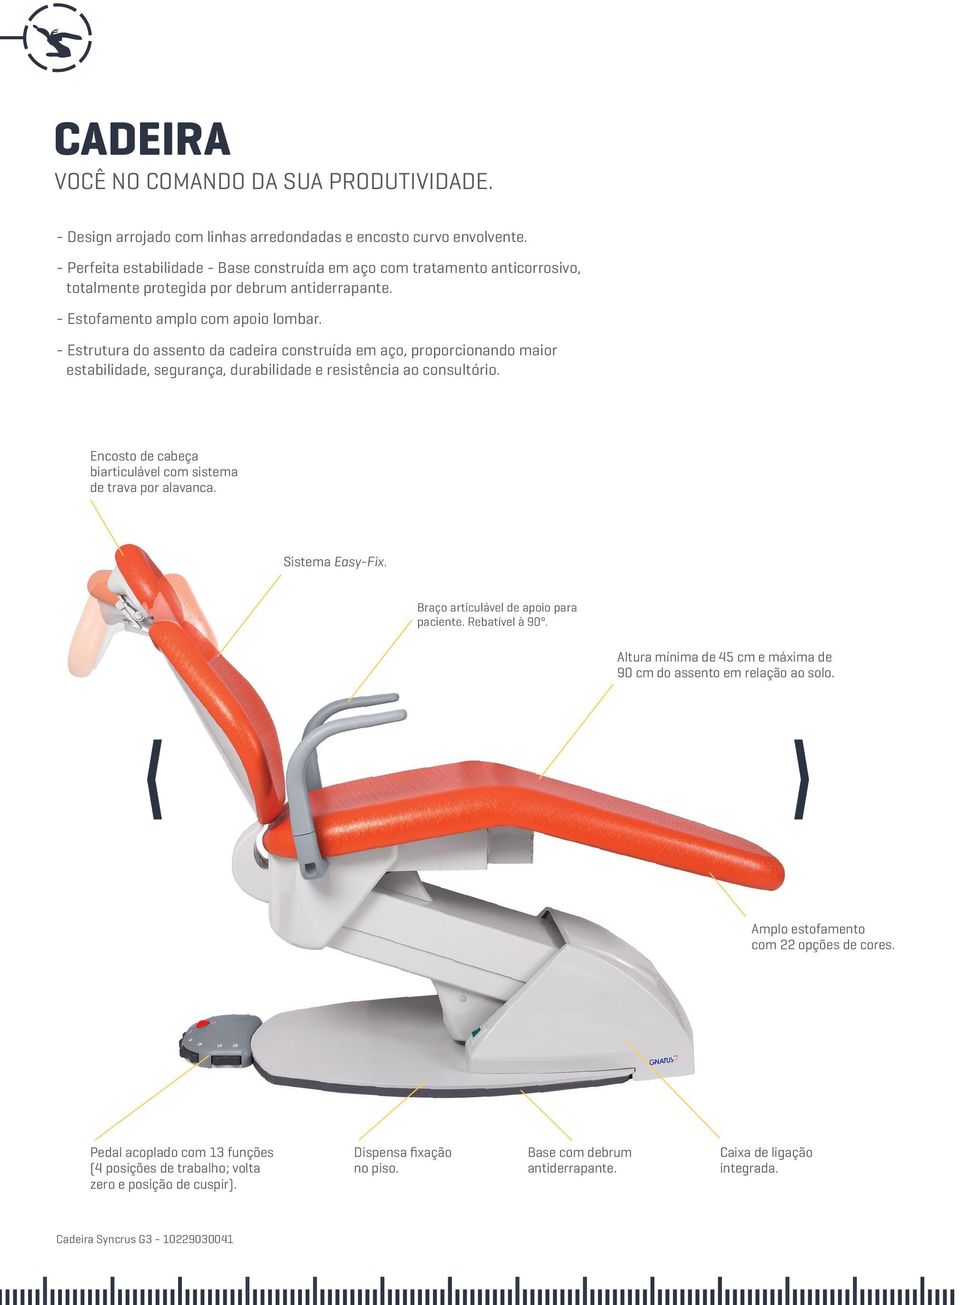 - Estrutura do assento da cadeira construída em aço, proporcionando maior estabilidade, segurança, durabilidade e resistência ao consultório.